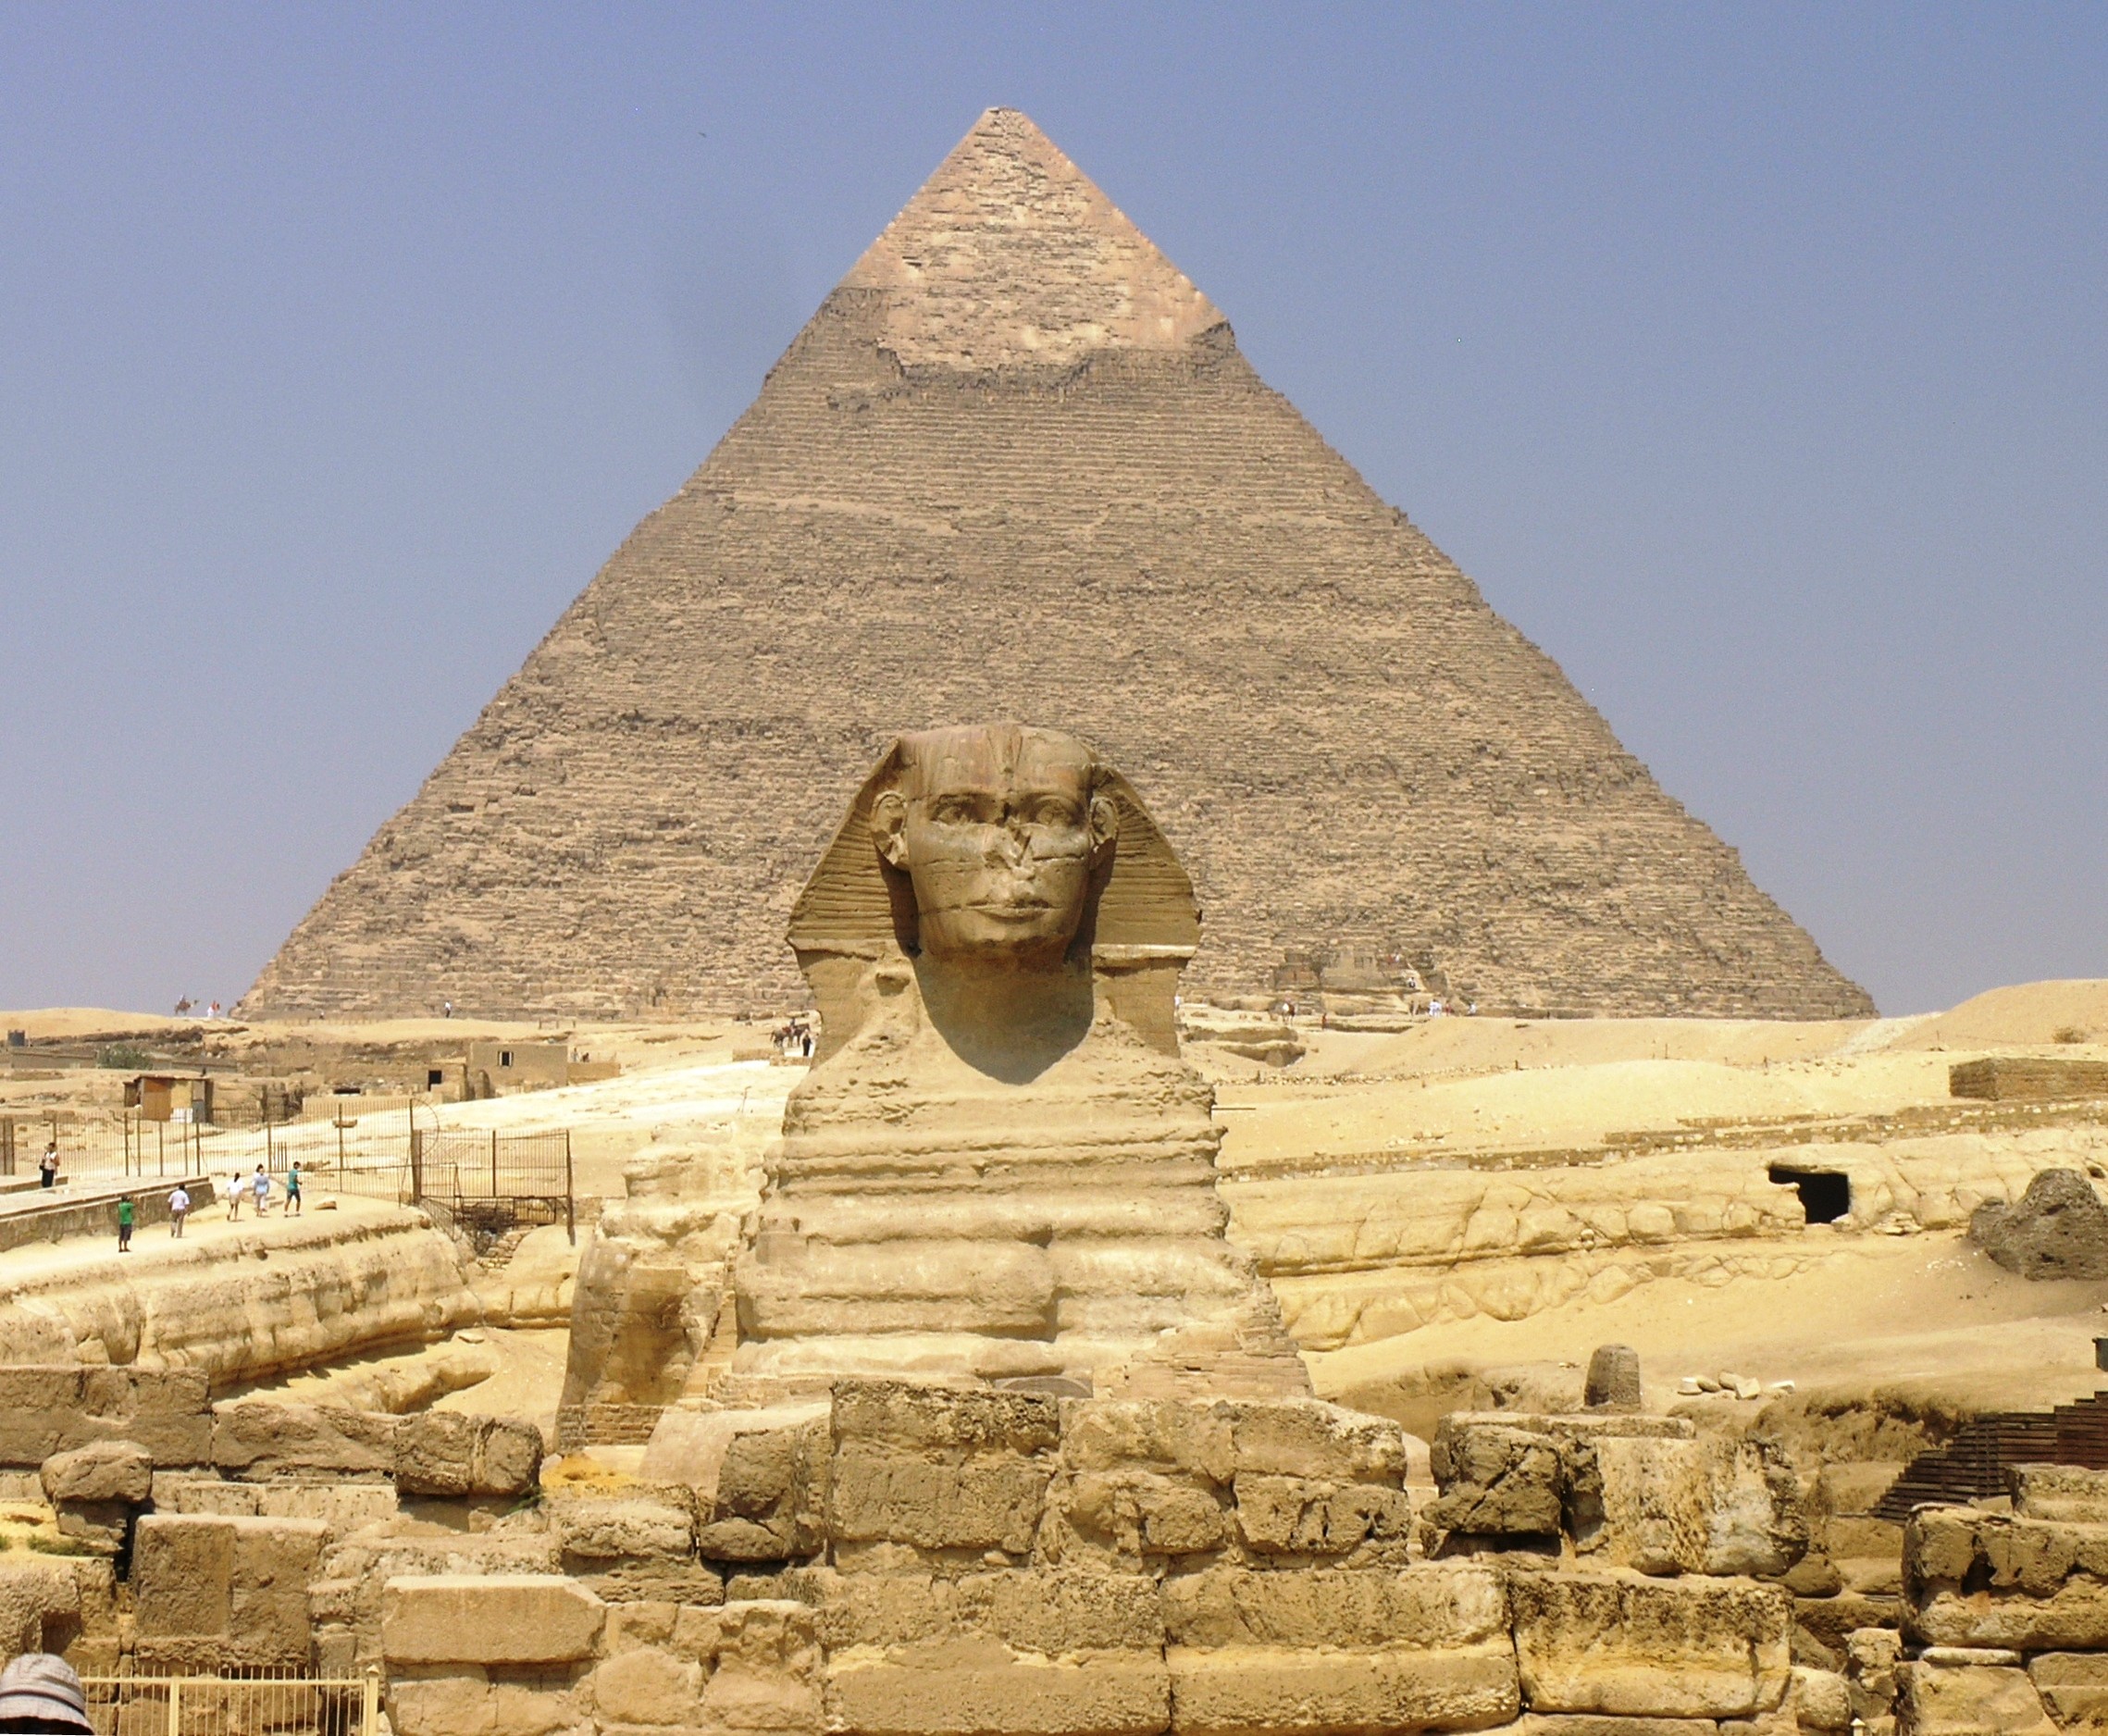 Pyramids Of Giza Sphinx Of Giza 2278x1876